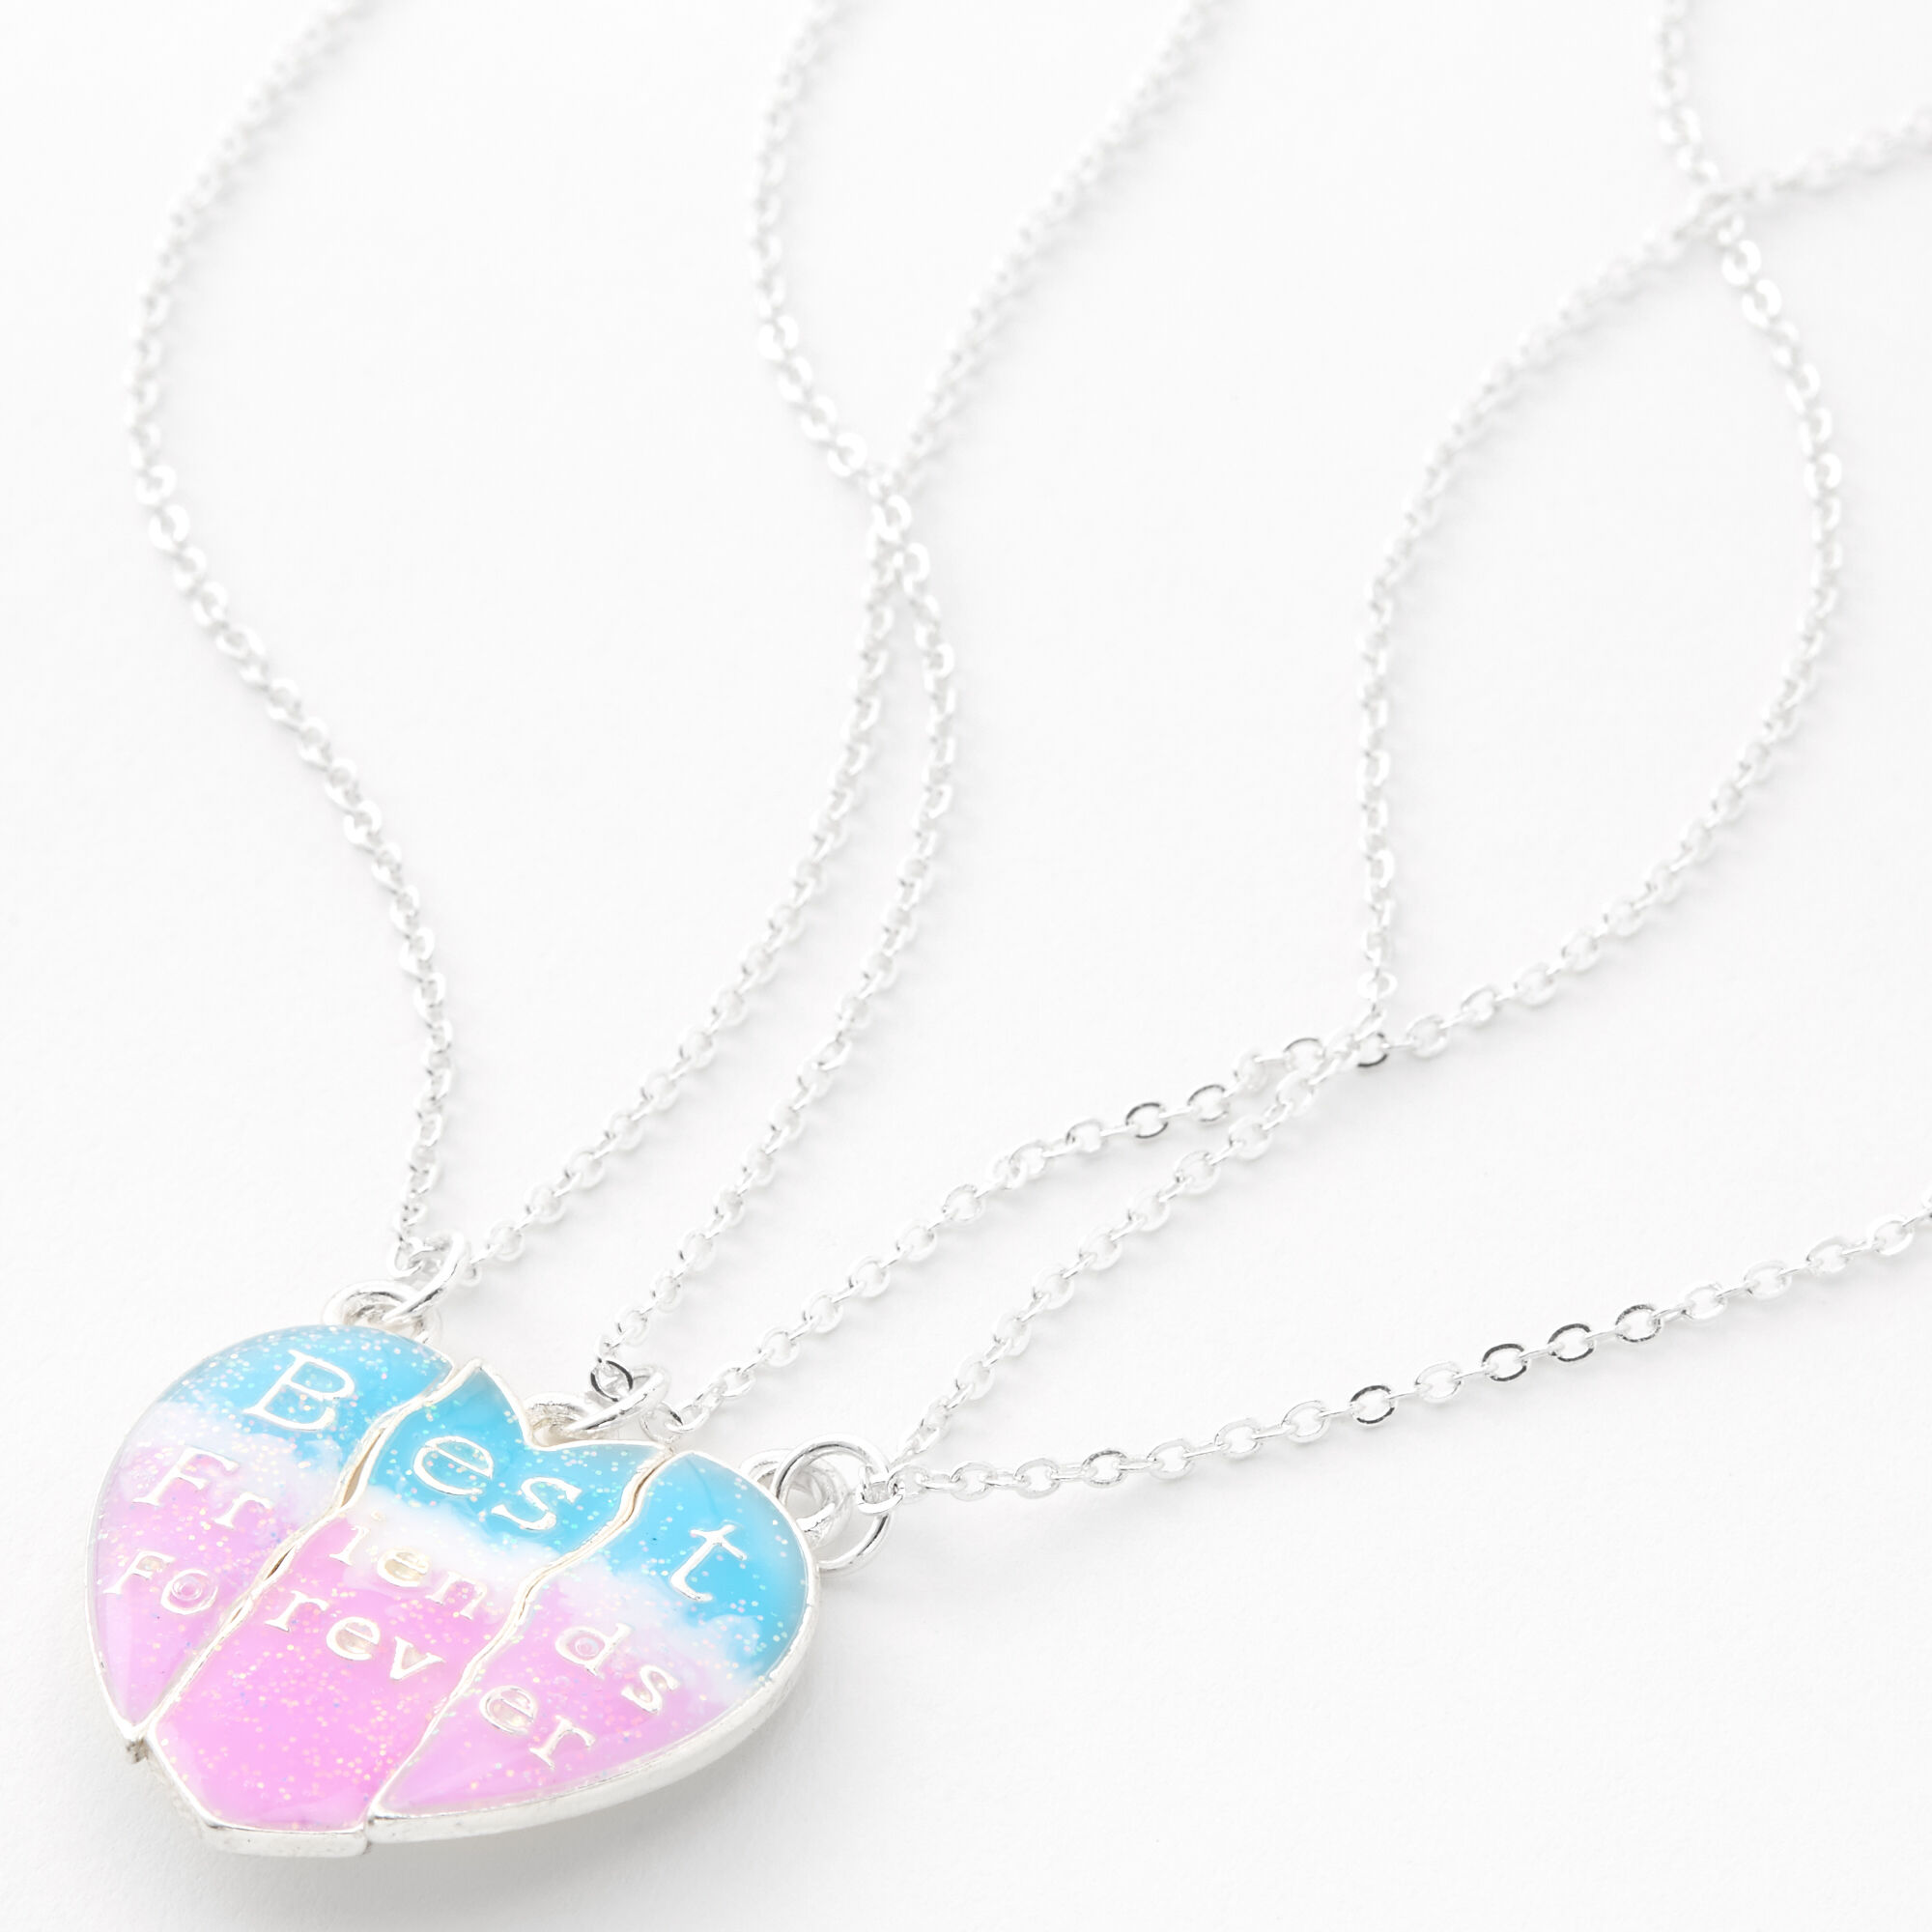 Claire's Best Friends Unicorn Heart Pendant Necklaces 2 Pack Blue/Pink 